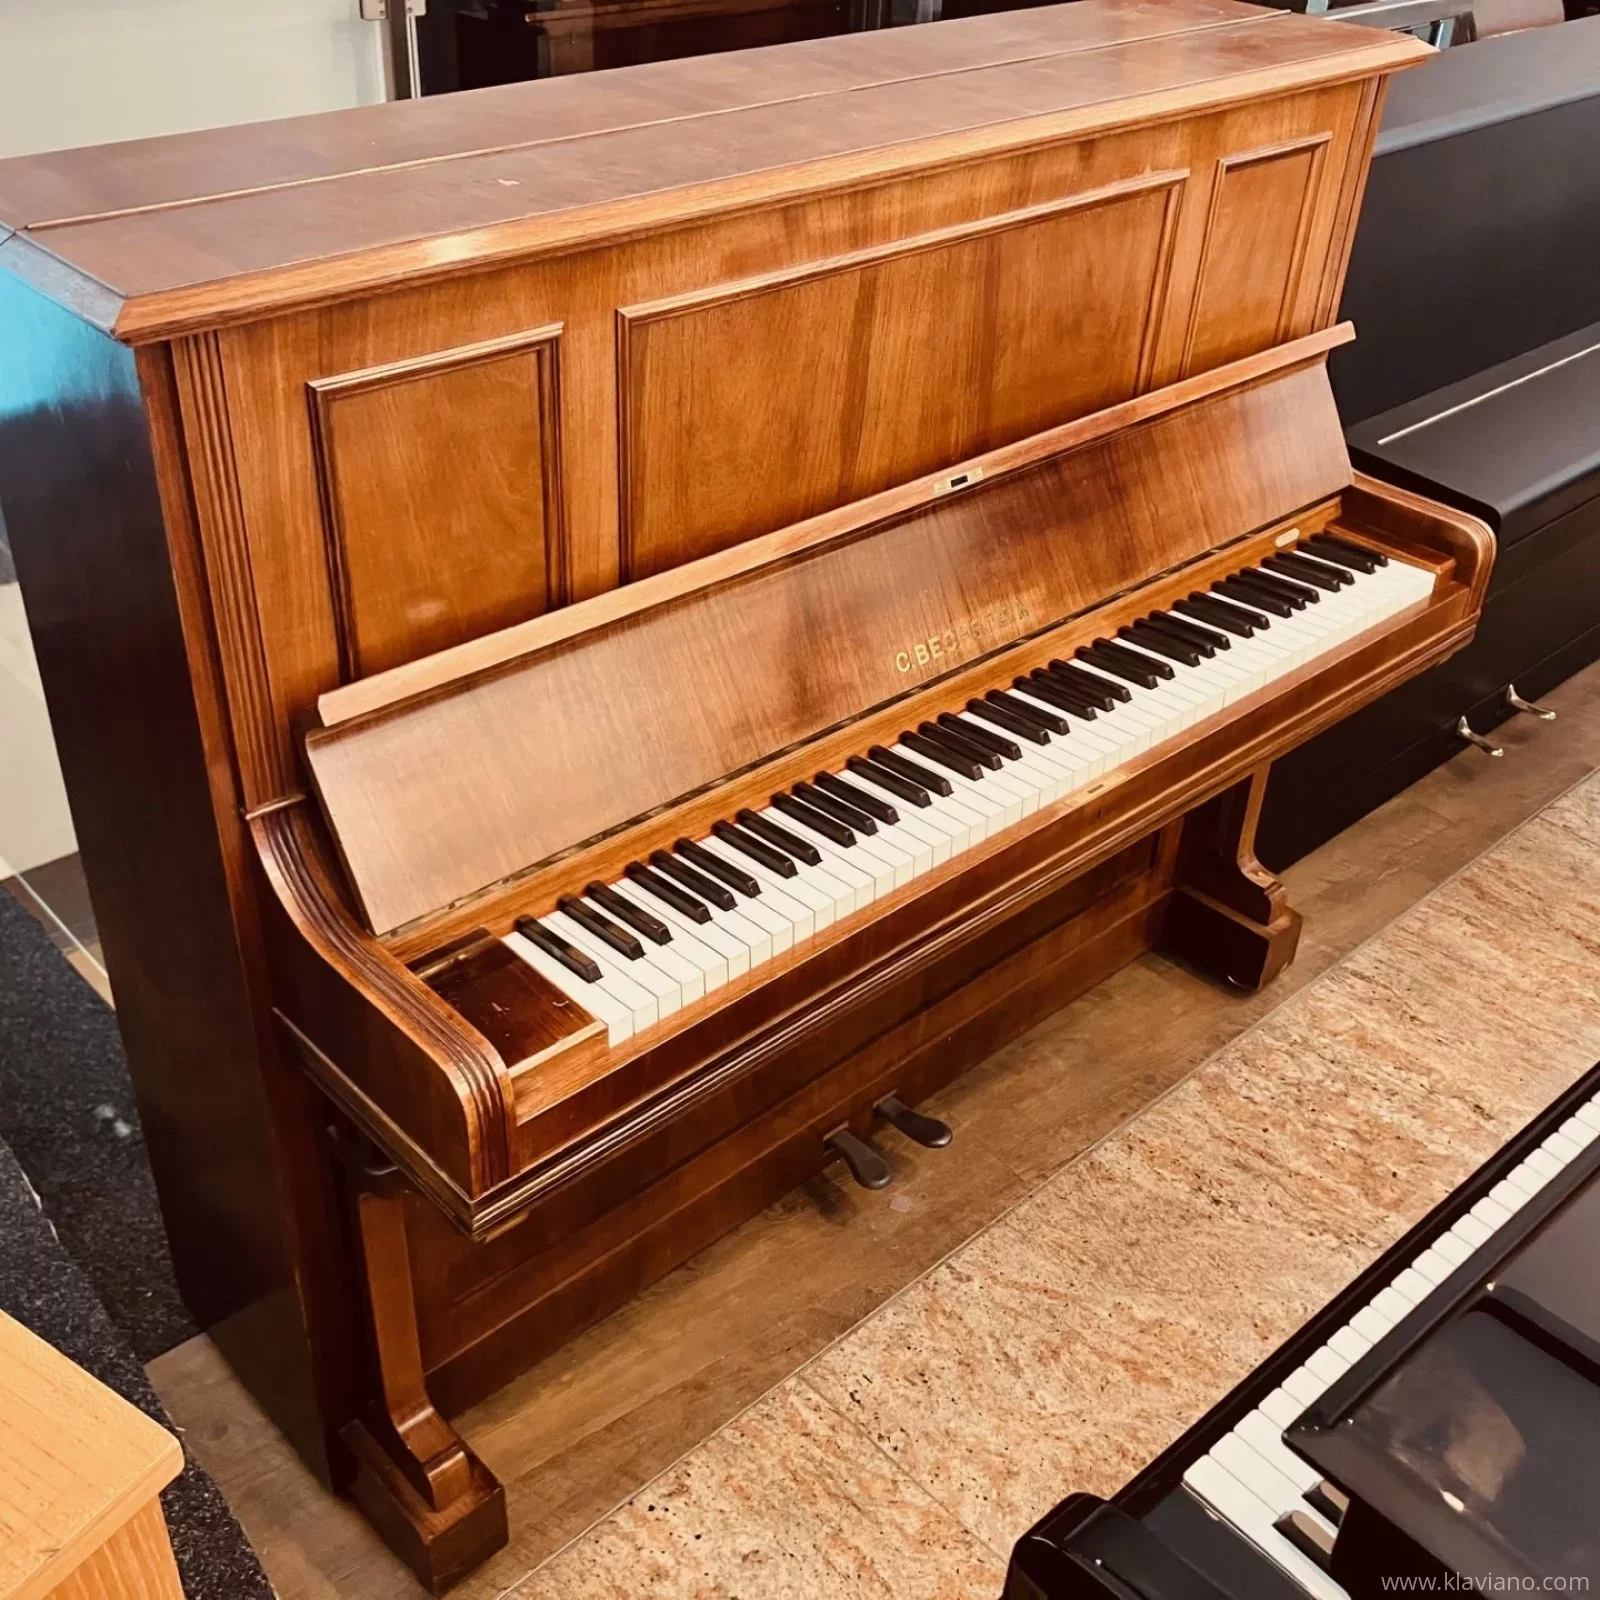 C. bechstein Klavier Modell 9 - Piano